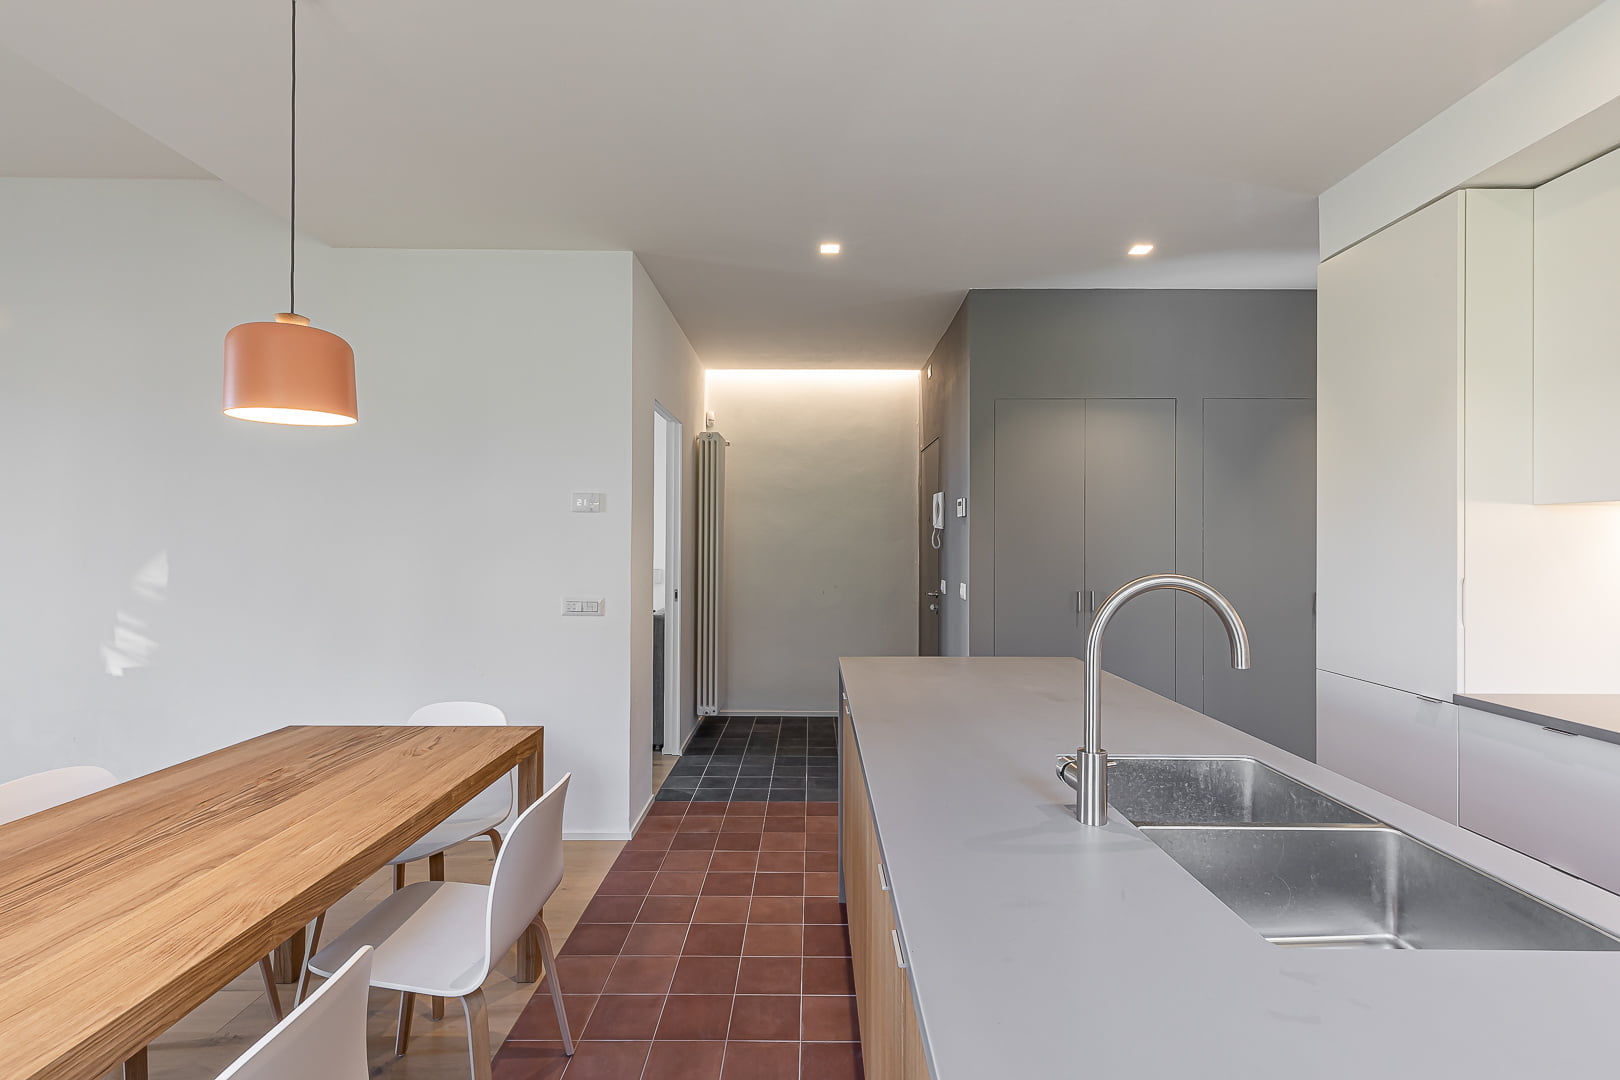 Ristrutturazione ed interior design di appartamento a Siena con open space, cucina con isola ed arredo bagno connesso alle Contrade